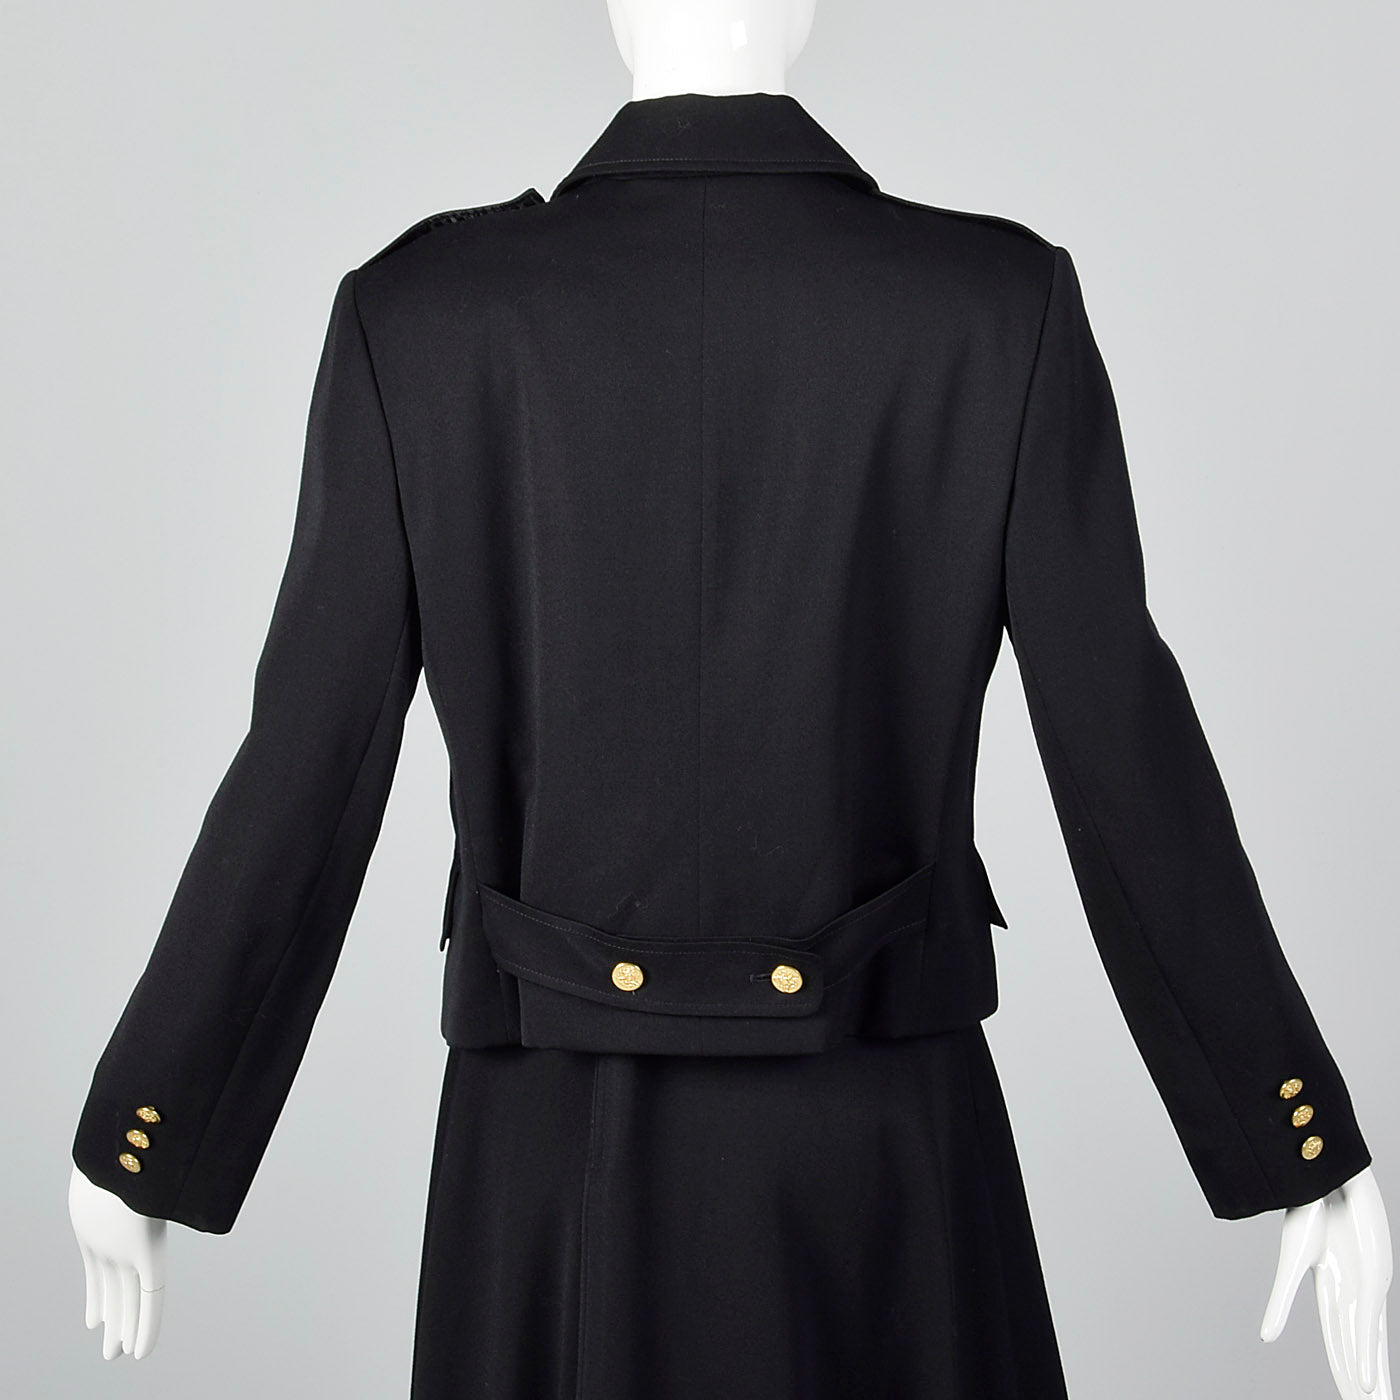 1960s Black Military Inspired Skirt Suit